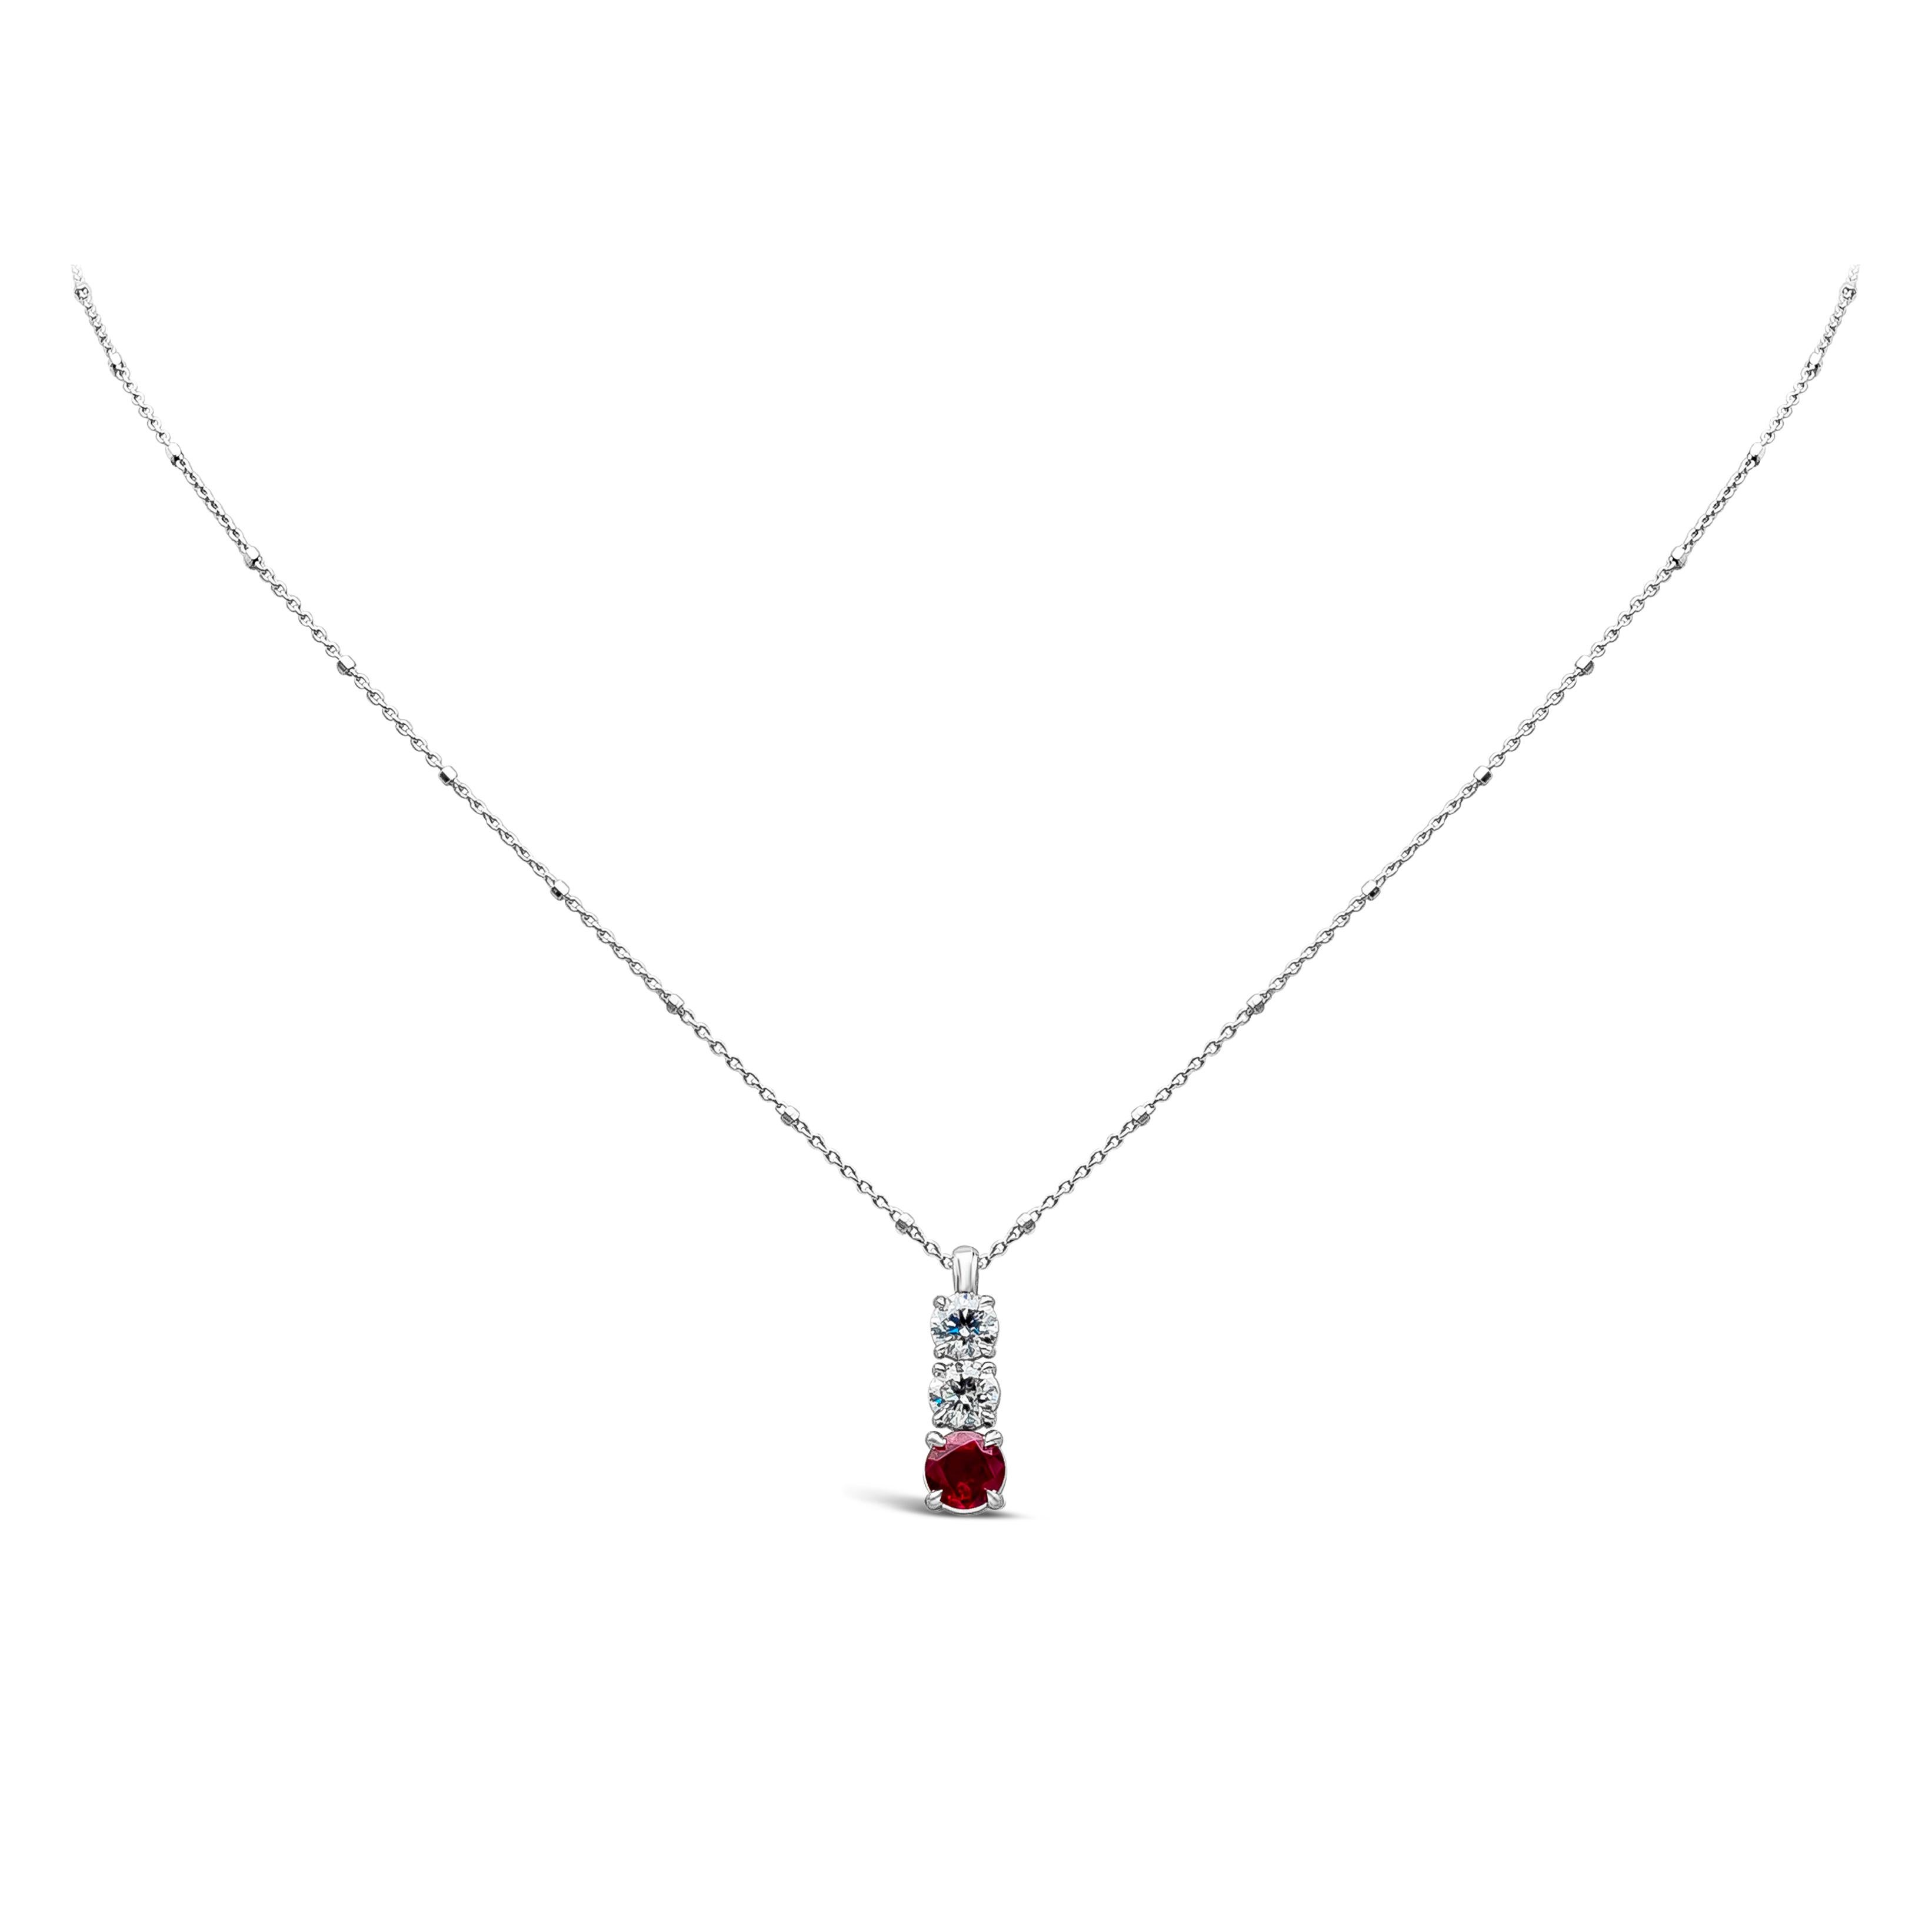 Ein einfaches und sehr stilvolles Schmuckstück ist eine Halskette mit drei Steinen, die einen Burma-Rubin mit einem Gesamtgewicht von 0,89 Karat und runde weiße Diamanten mit einem Gesamtgewicht von 0,87 Karat, Farbe F und Reinheit SI präsentiert.